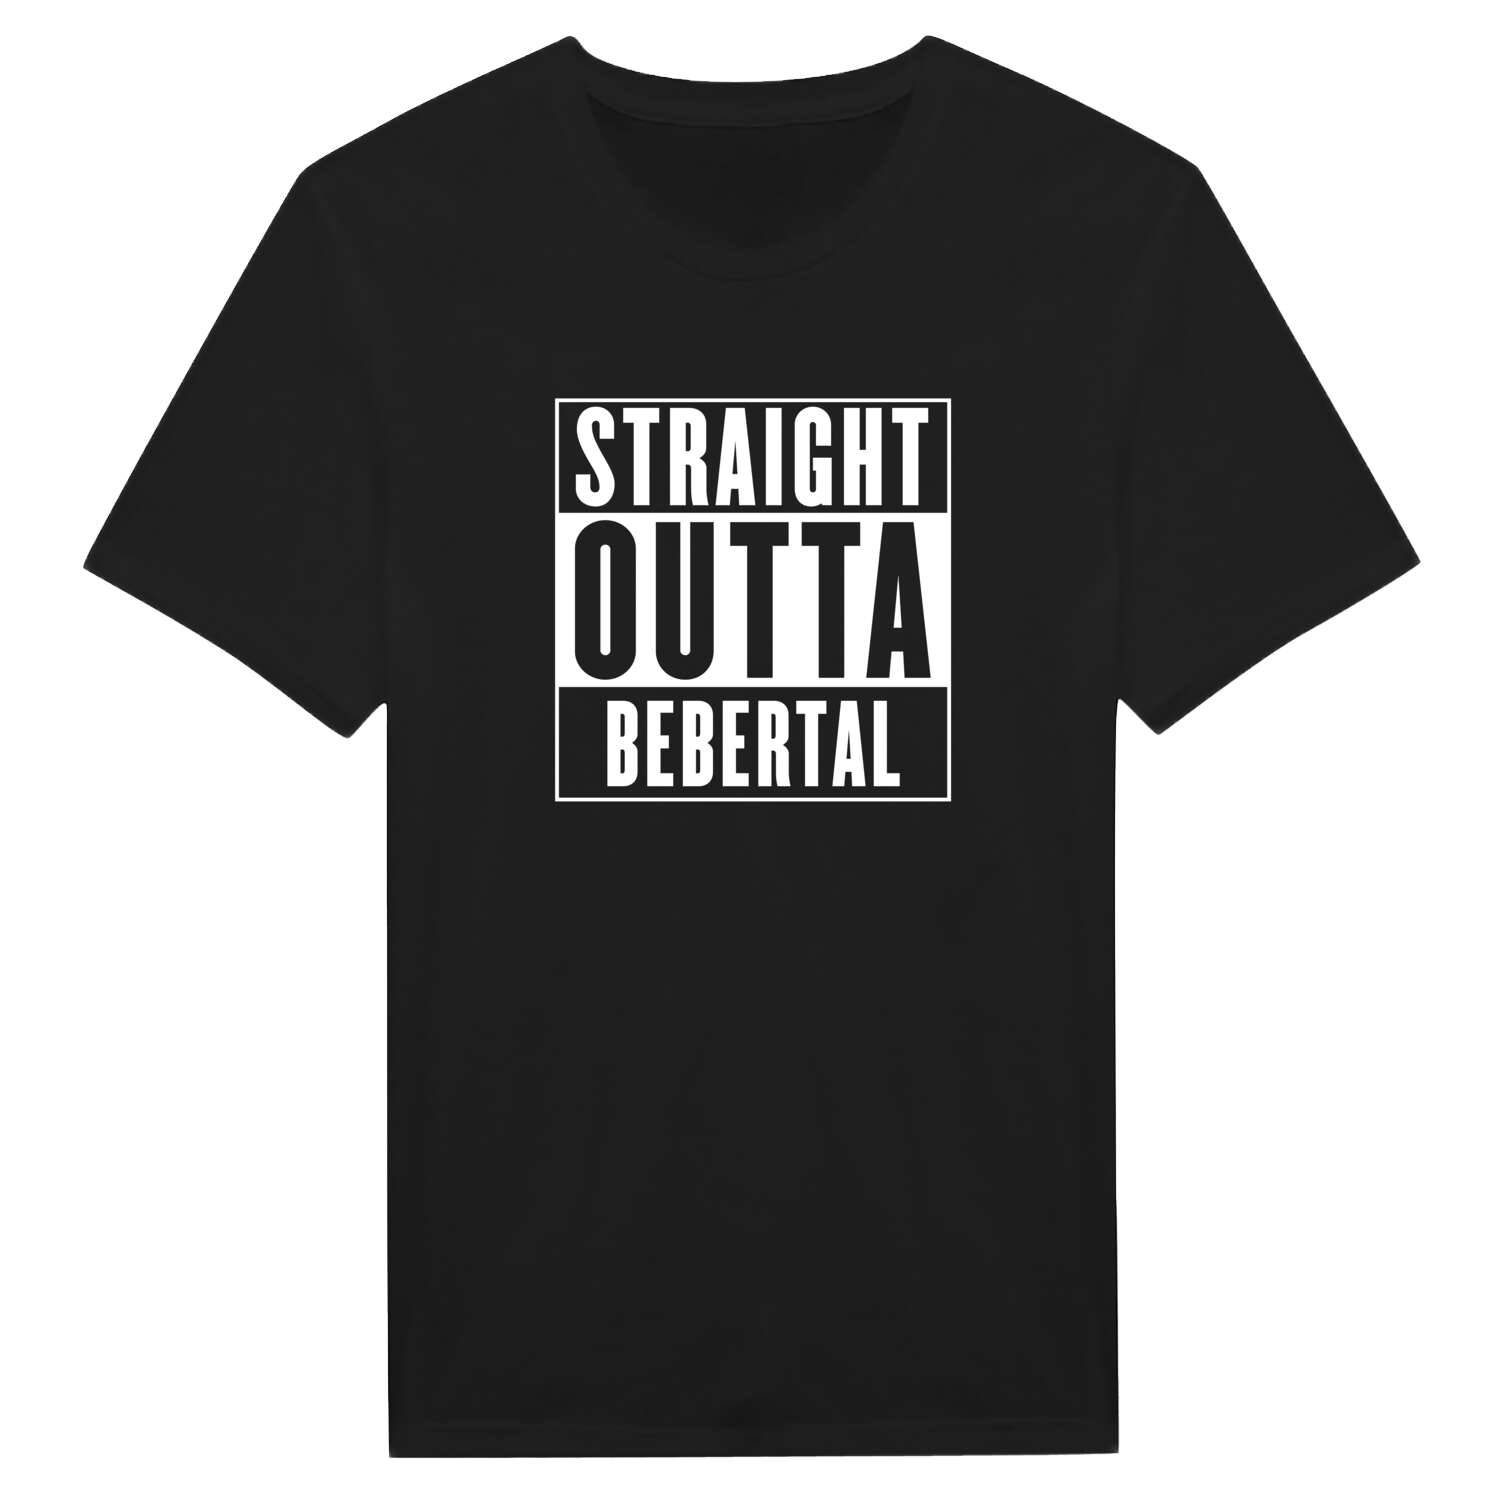 Bebertal T-Shirt »Straight Outta«